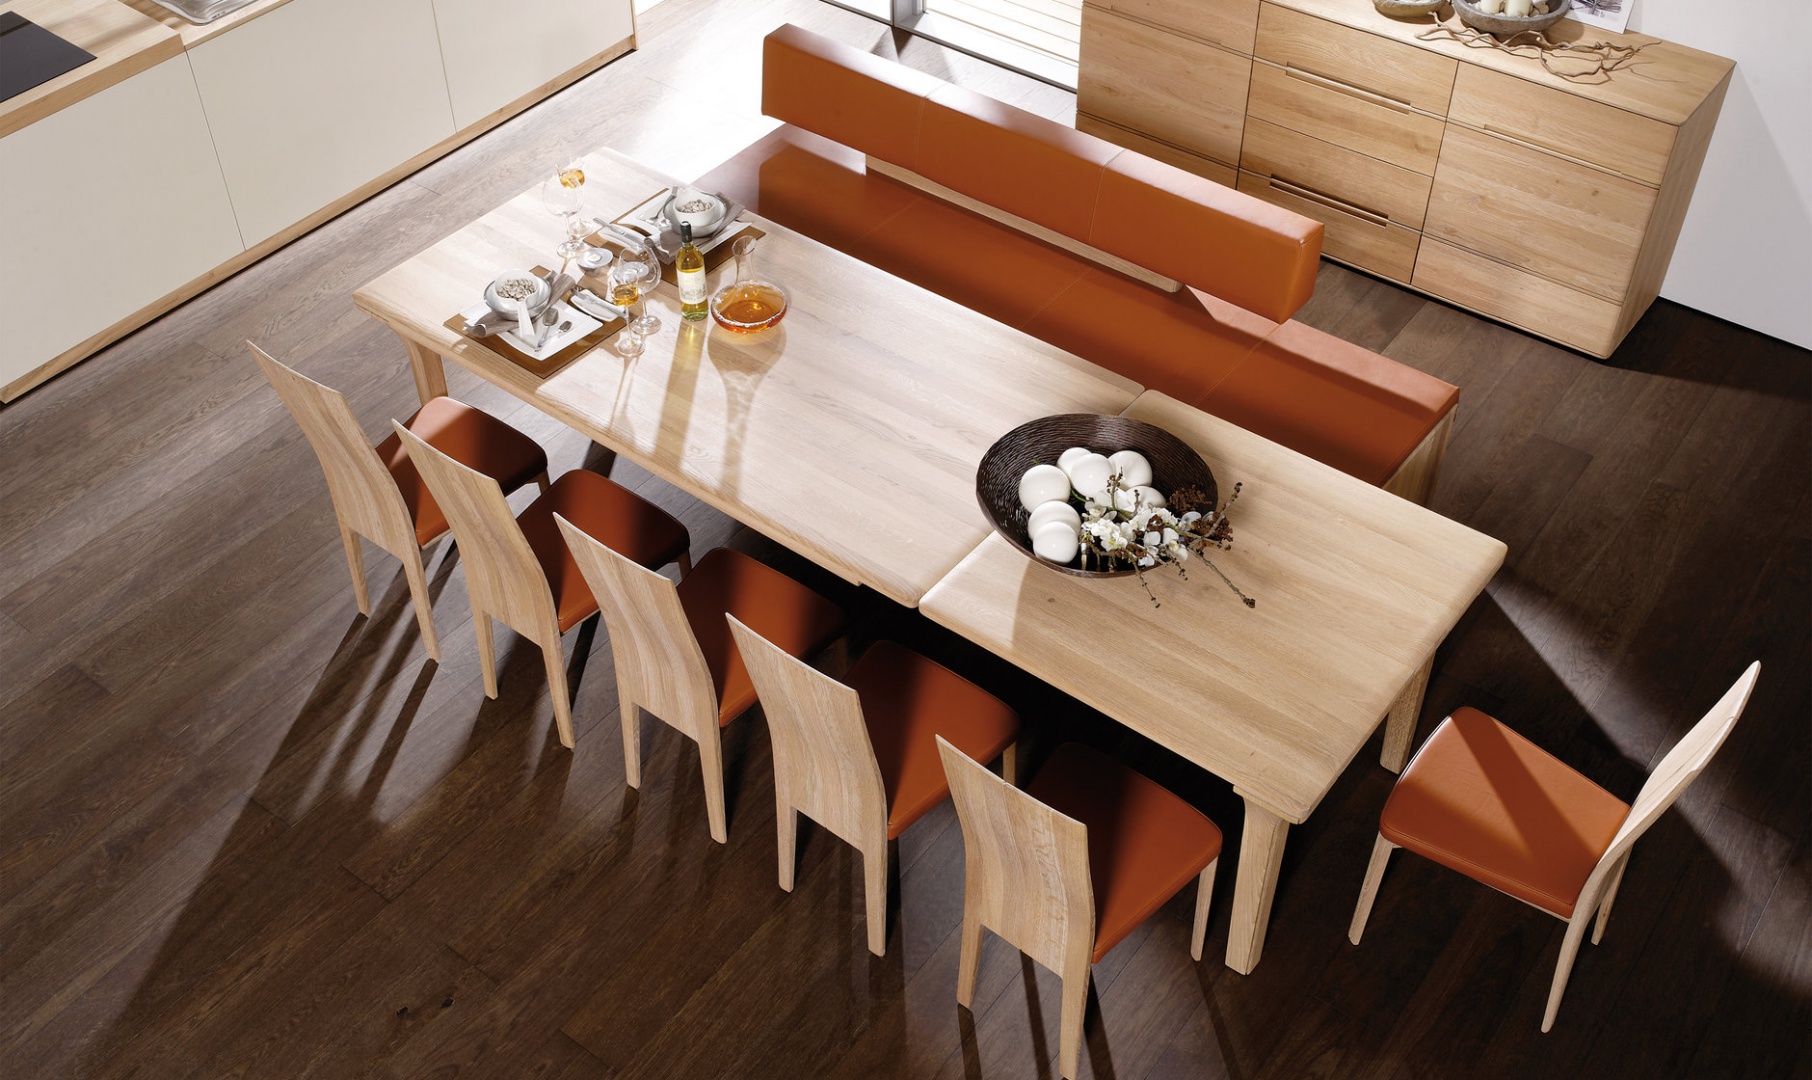 Pomarańczowa tapicerka krzeseł i nowoczesnej ławy sprawia, że jadalnia staje się jeszcze cieplejsza i zyskuje apetyczny wygląd. Fot. Voglauer.